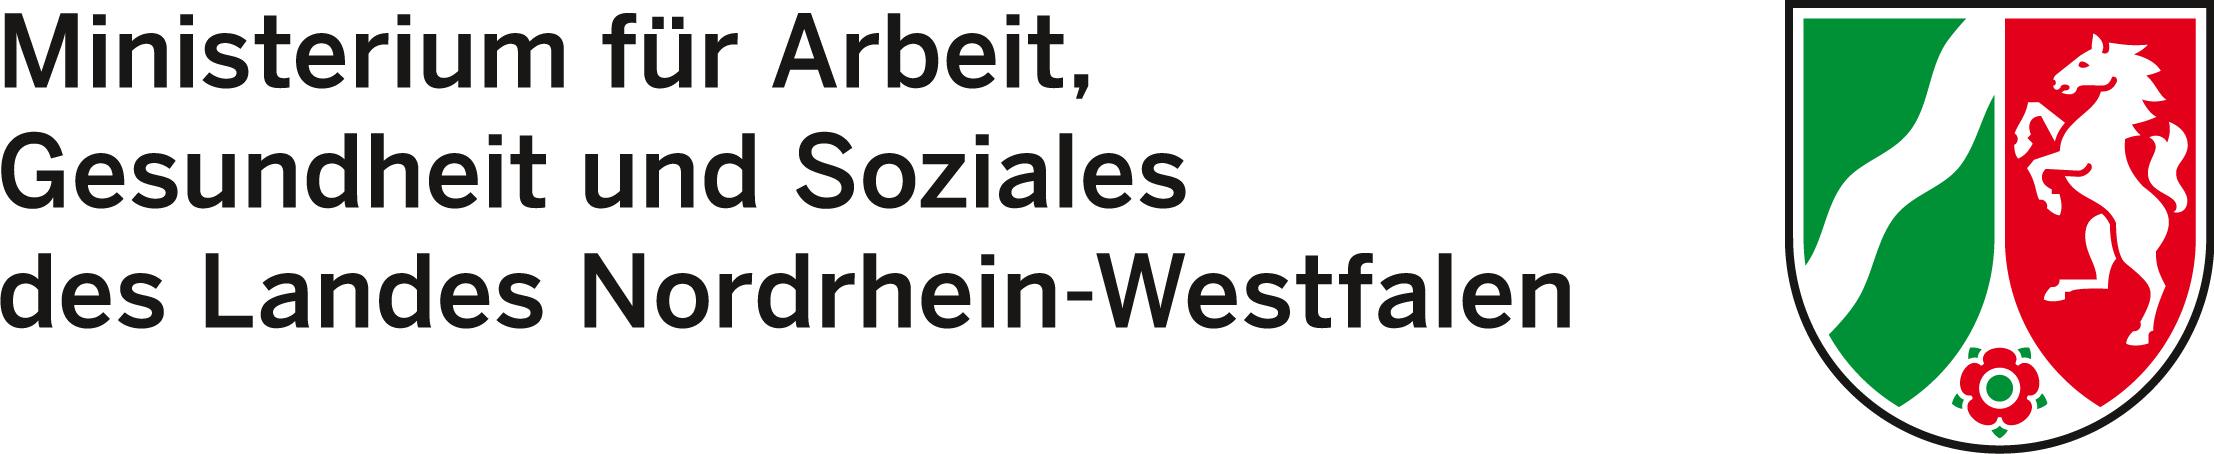 Wappen der Landes Nordrhein-Westfalen, rechts daneben schwarzer Text: Ministerium für Arbeit, Gesundheit und Soziales des Landes Nordrhein-Westfalen